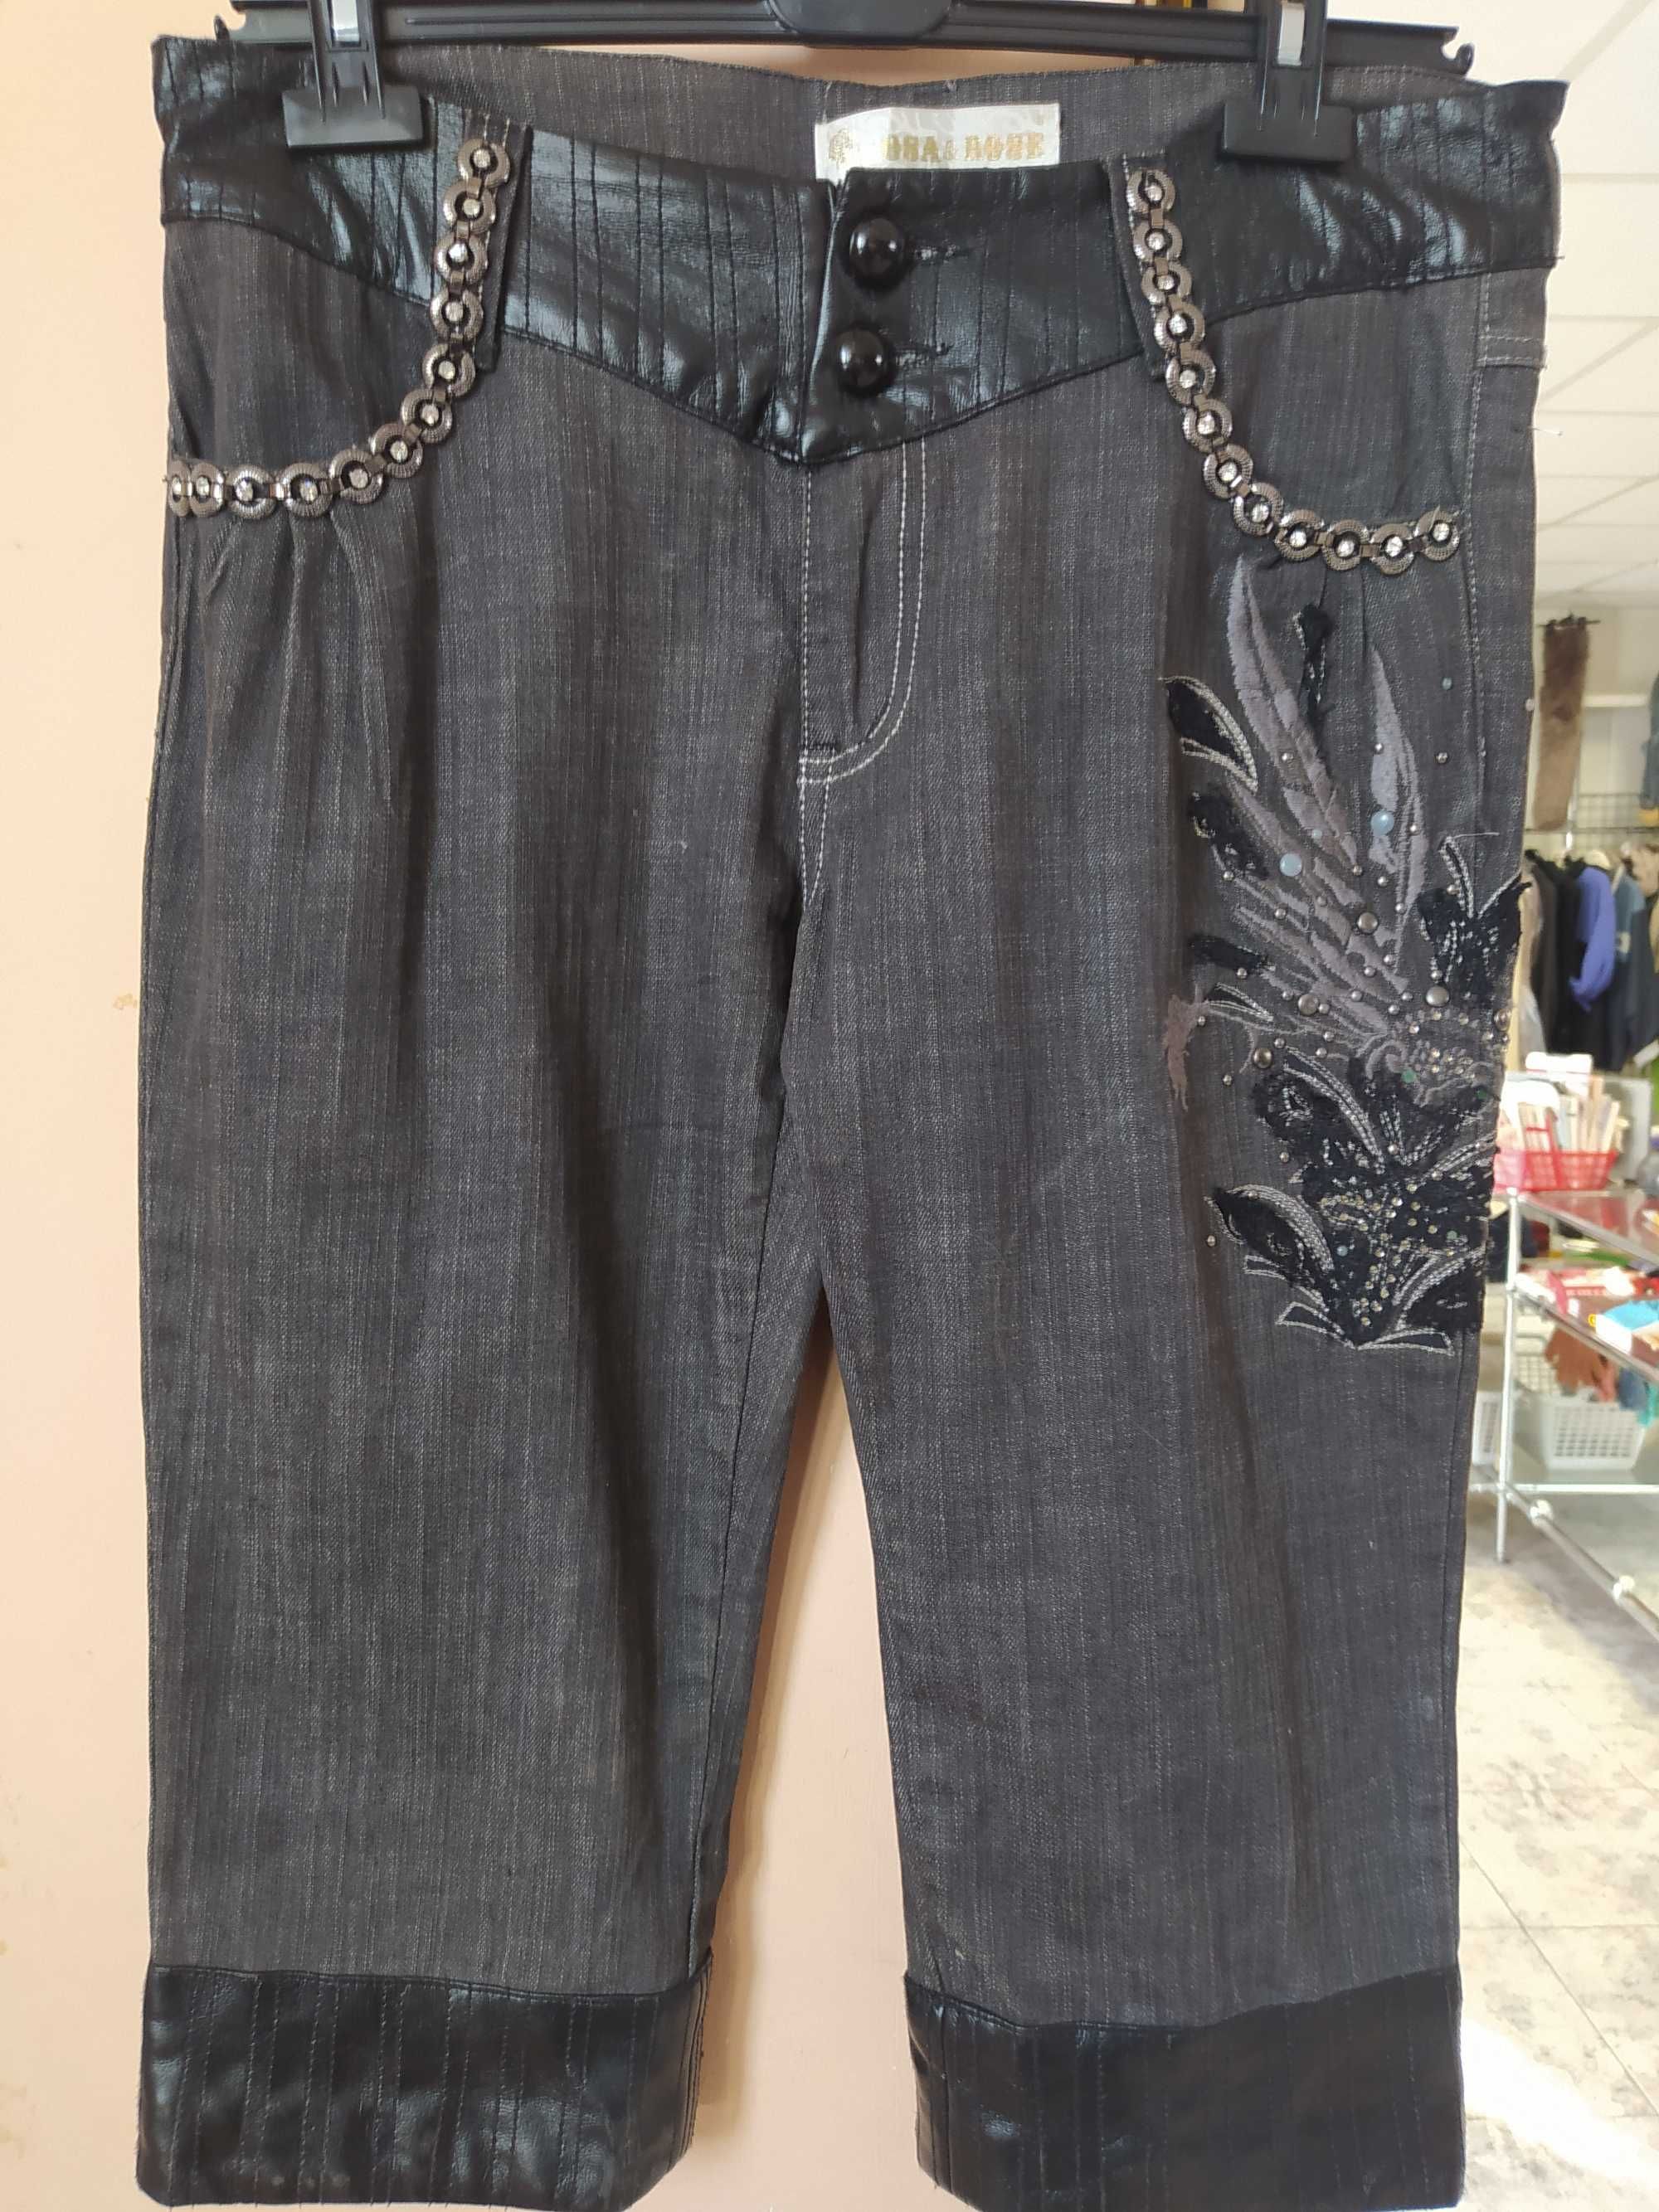 Spodnie XL jeans włoskie Rosa&Rosa  Nowe Likwidacja sklepu